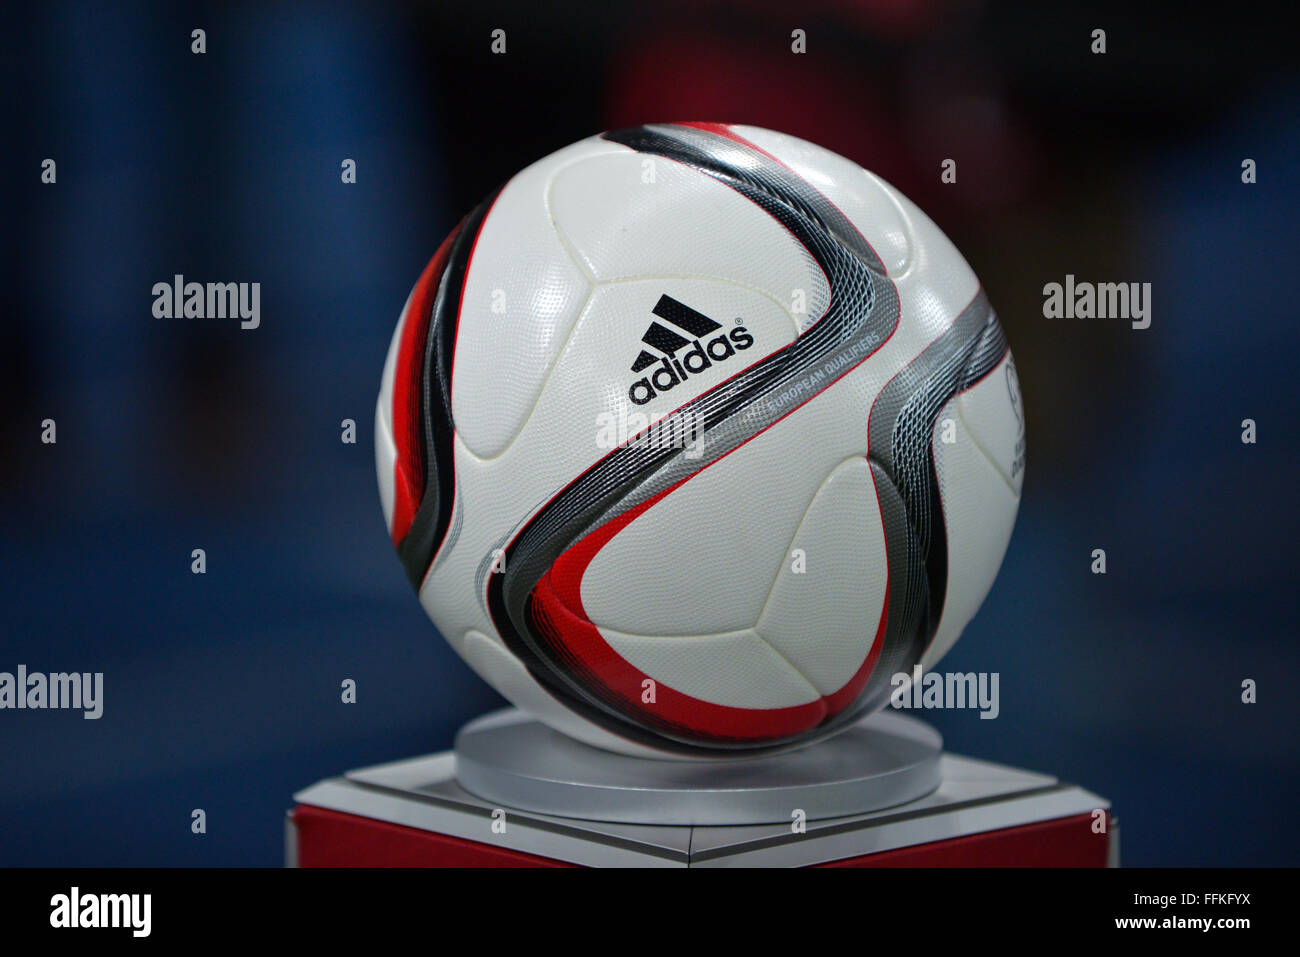 adidas euro 2016 qualifier ball